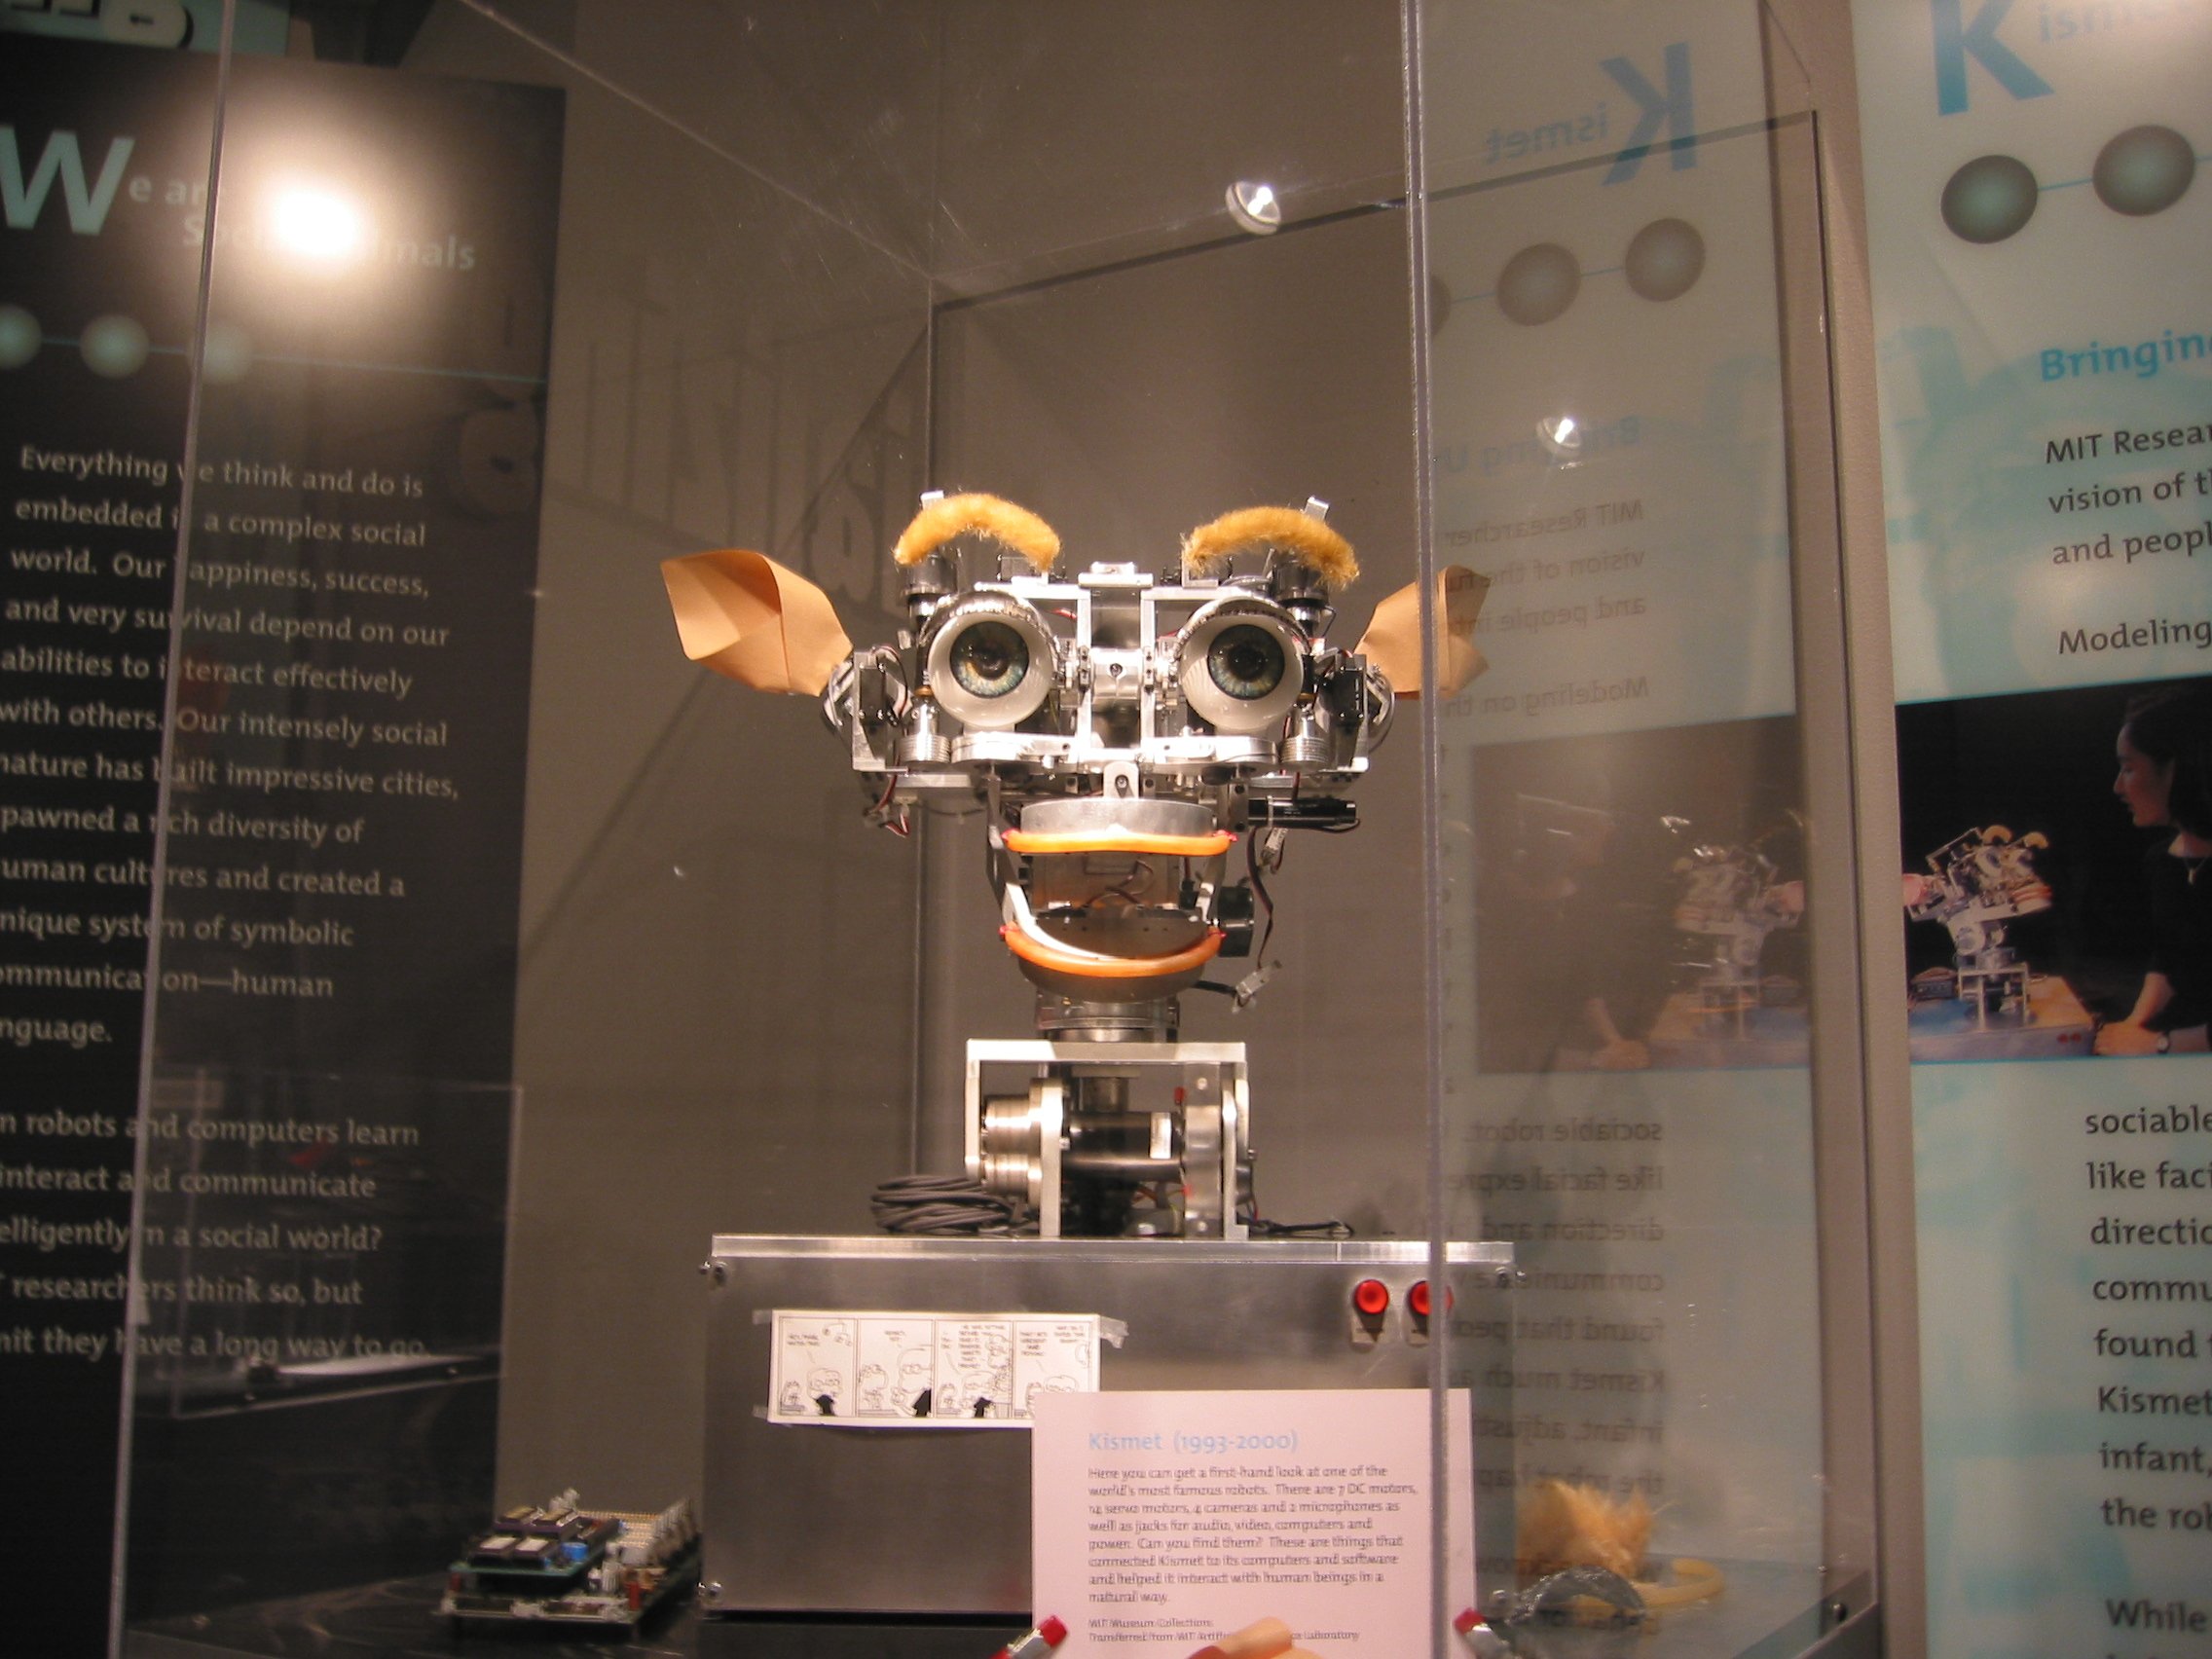 Kismet_robot_at_MIT_Museum